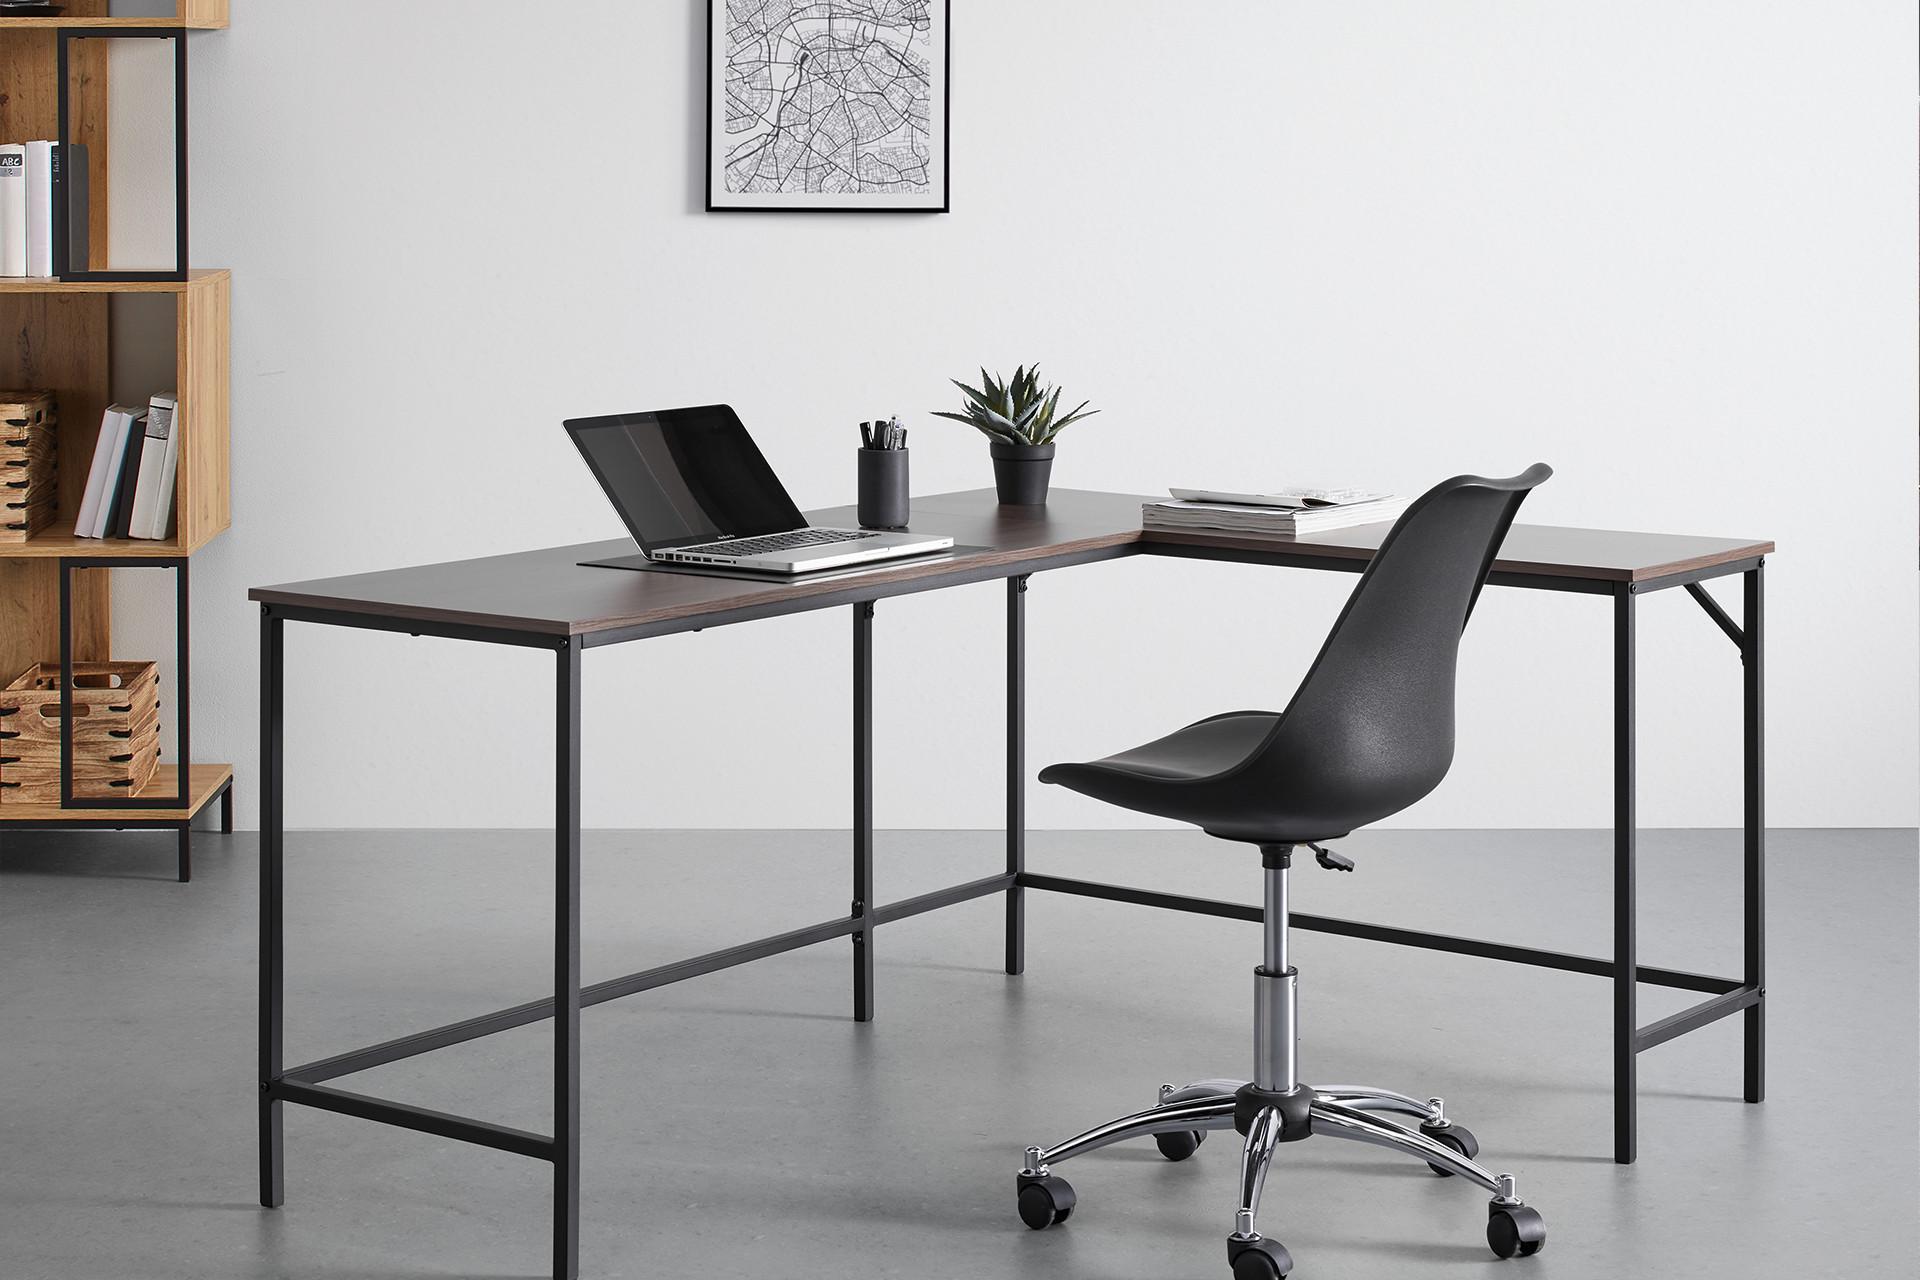 Stylischer Schreibtisch in Walnussfarben perfekt für Homeoffice von moemax.png